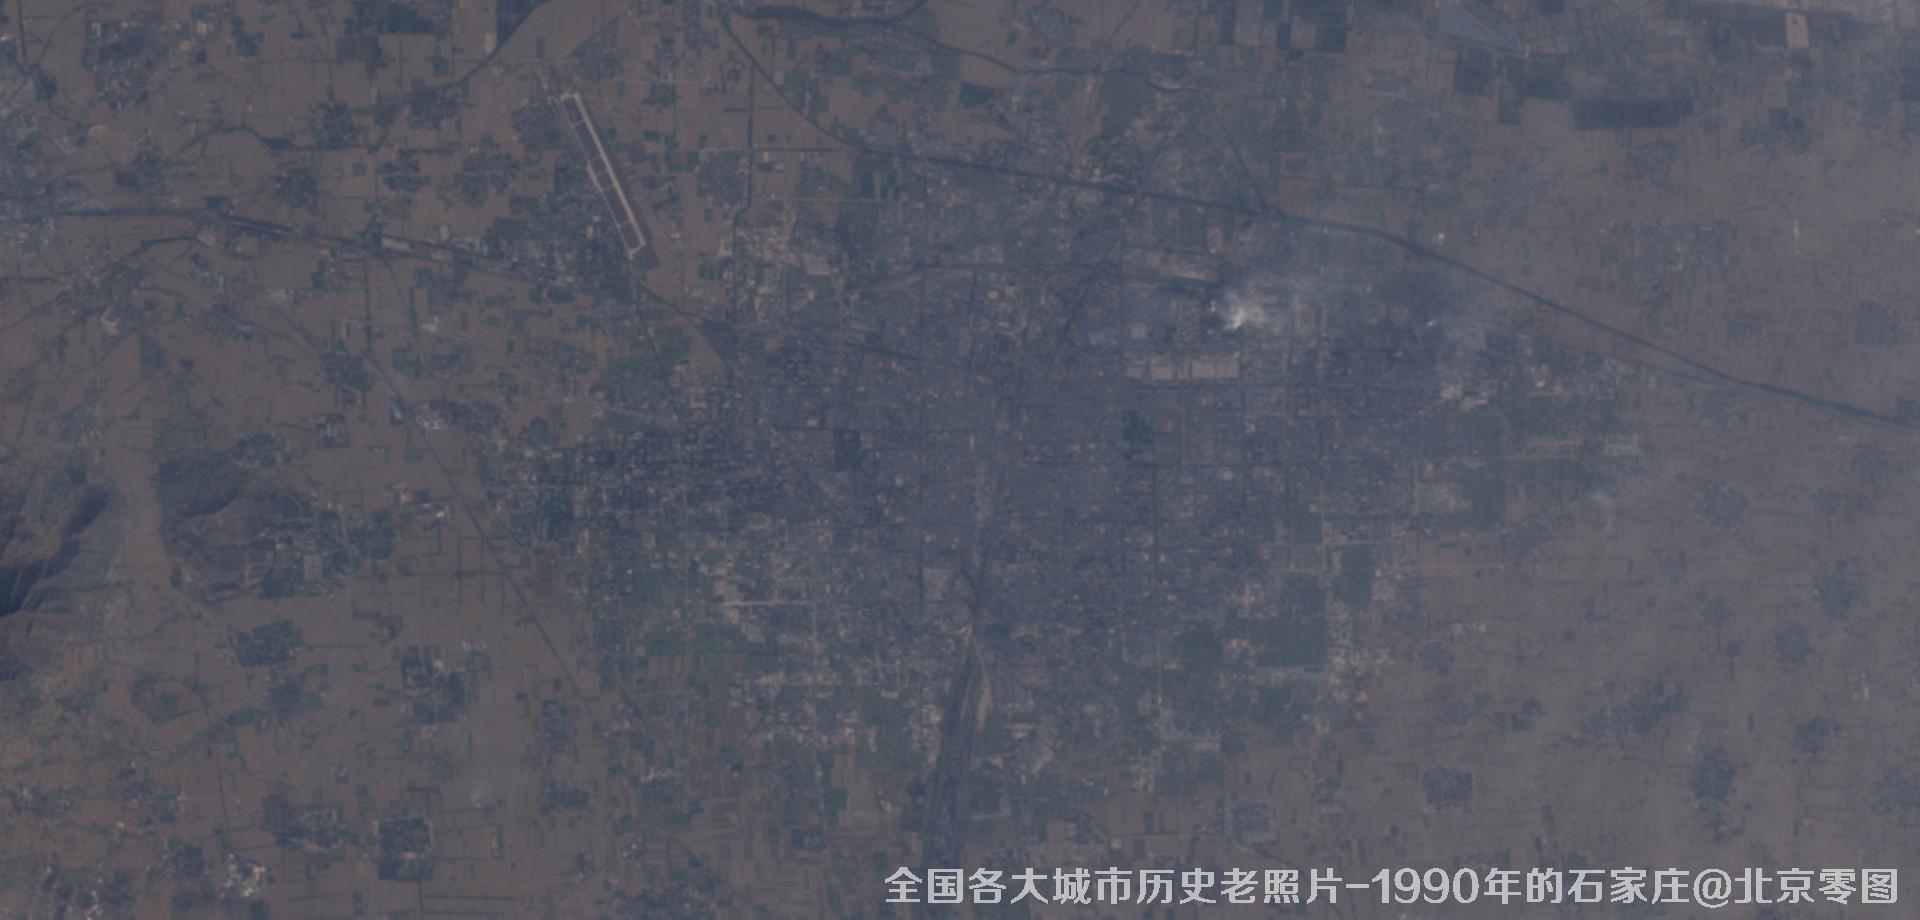 美国Landsat卫星拍摄的1990年的河北省石家庄市历史卫星影像图